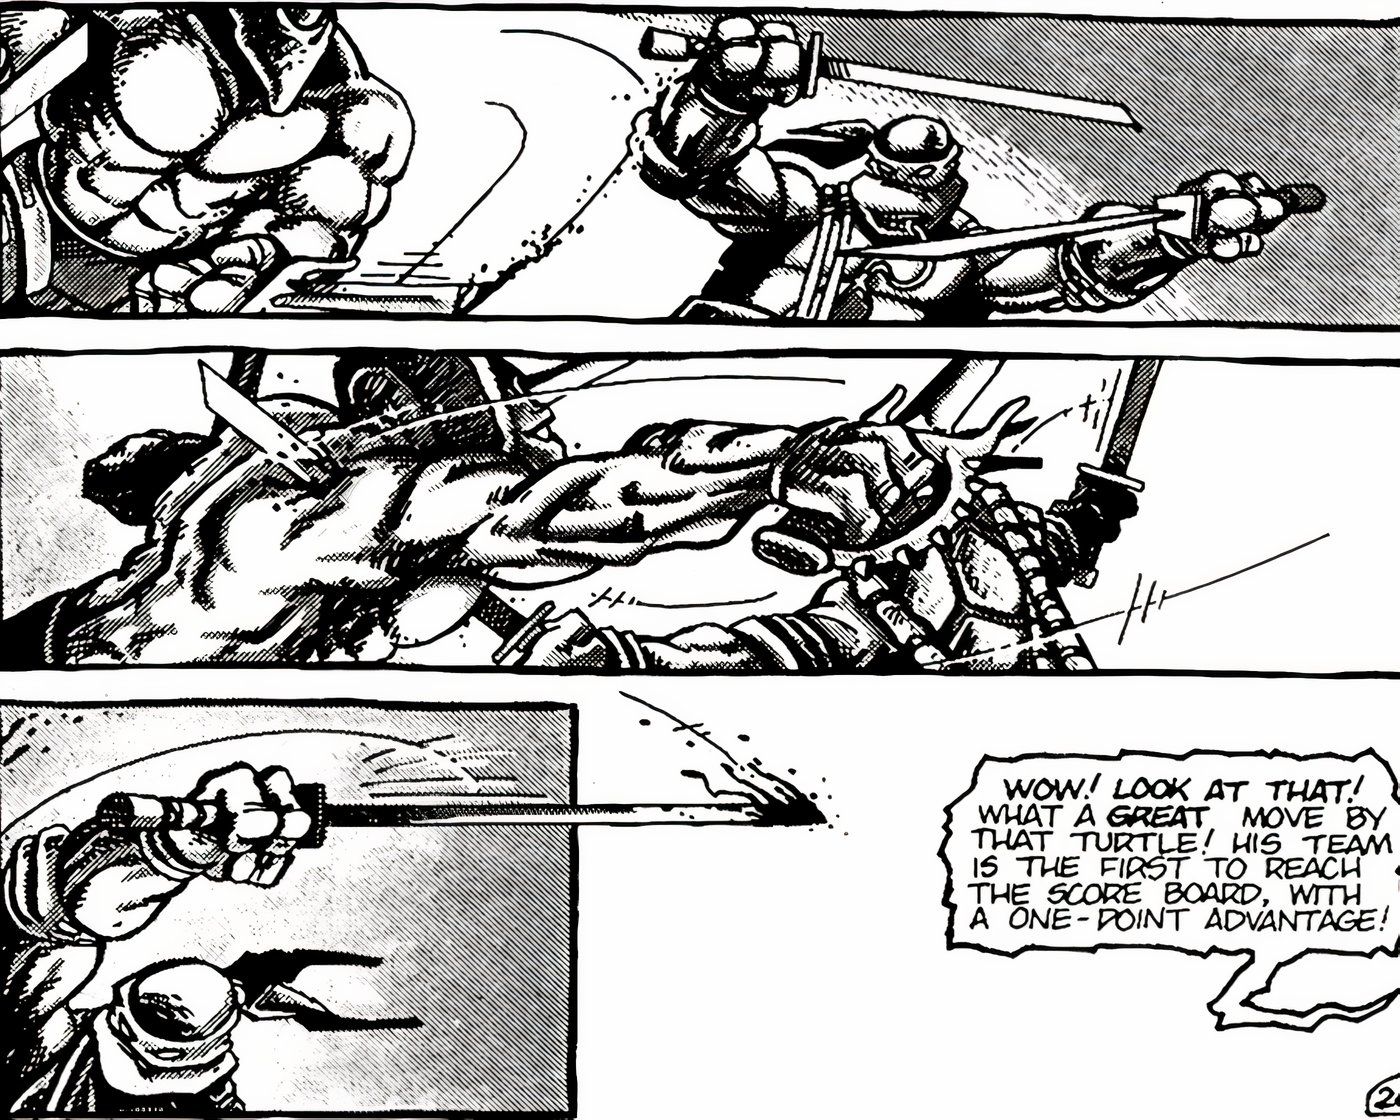 Leonardo de TMNT matando um tricerátopo antropomórfico com sua espada.